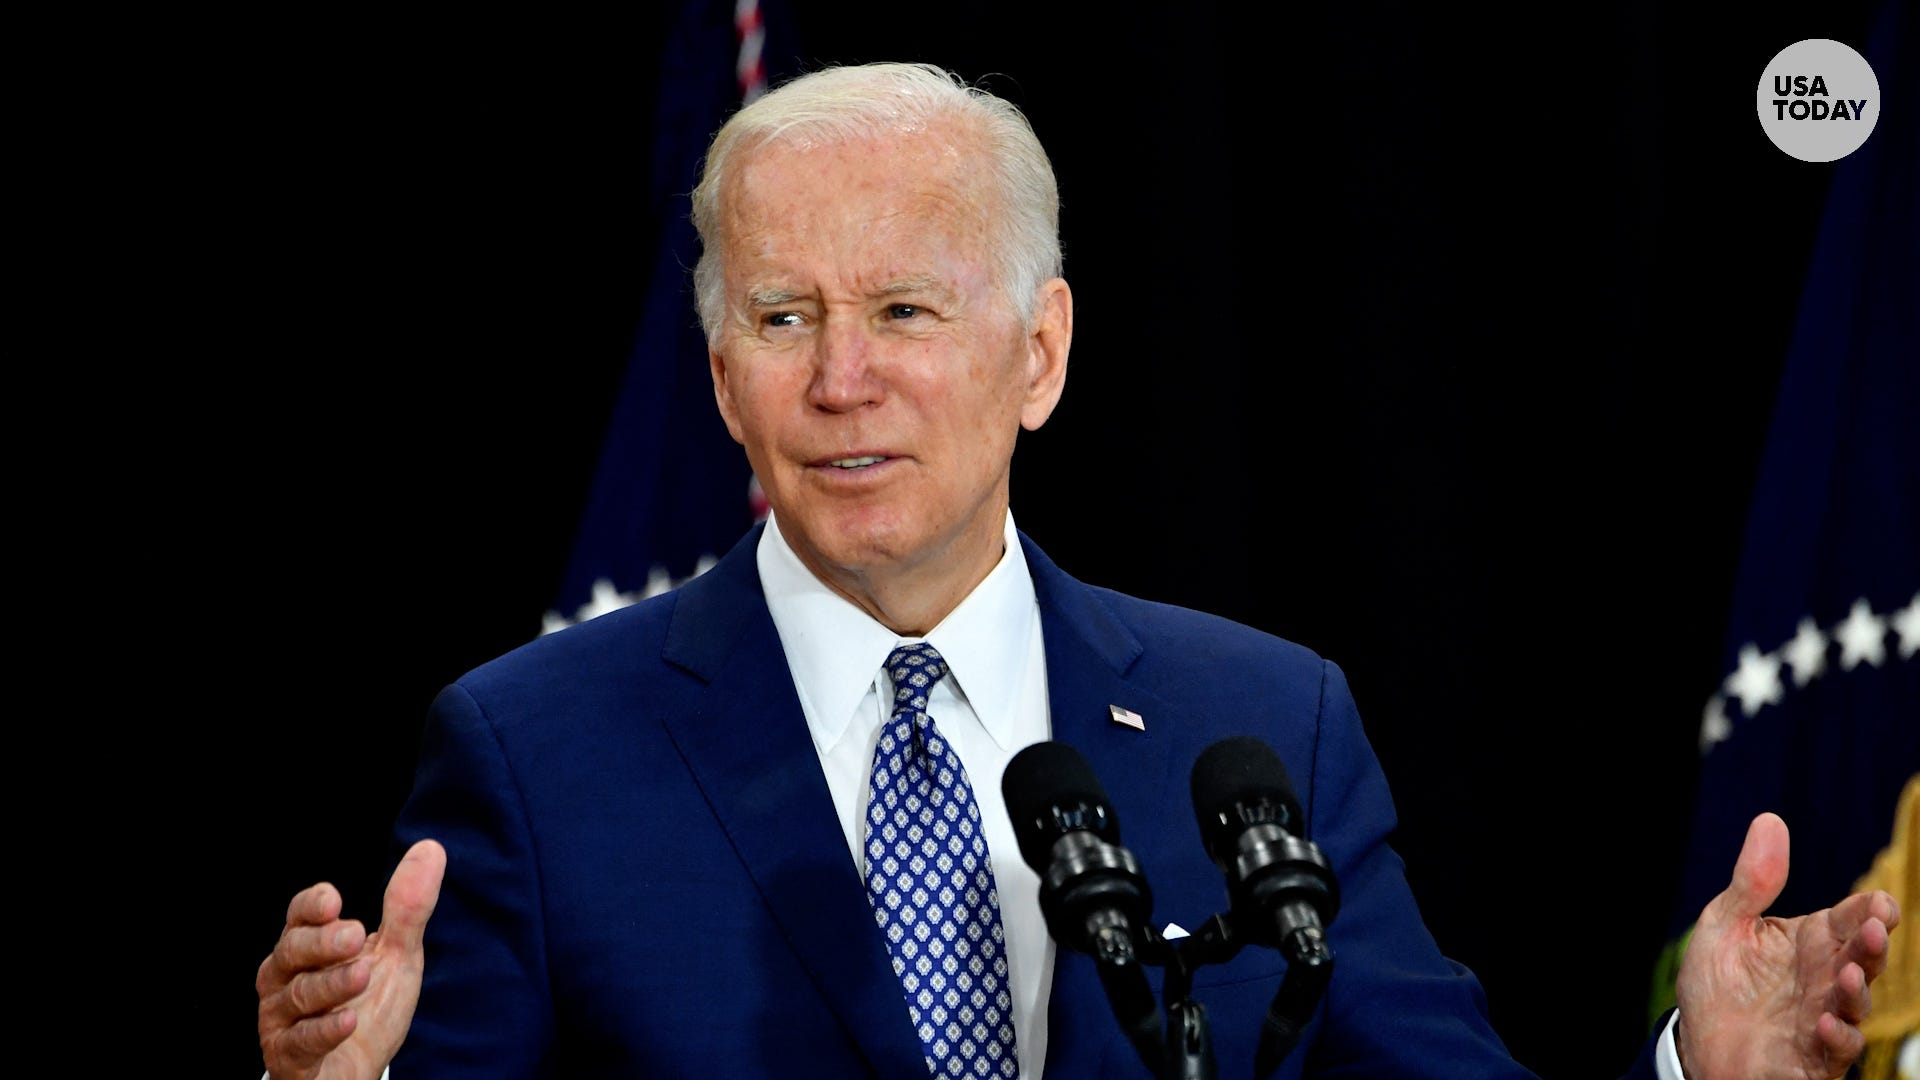 'In America, evil will not win': President Biden speaks in Buffalo after mass shooting